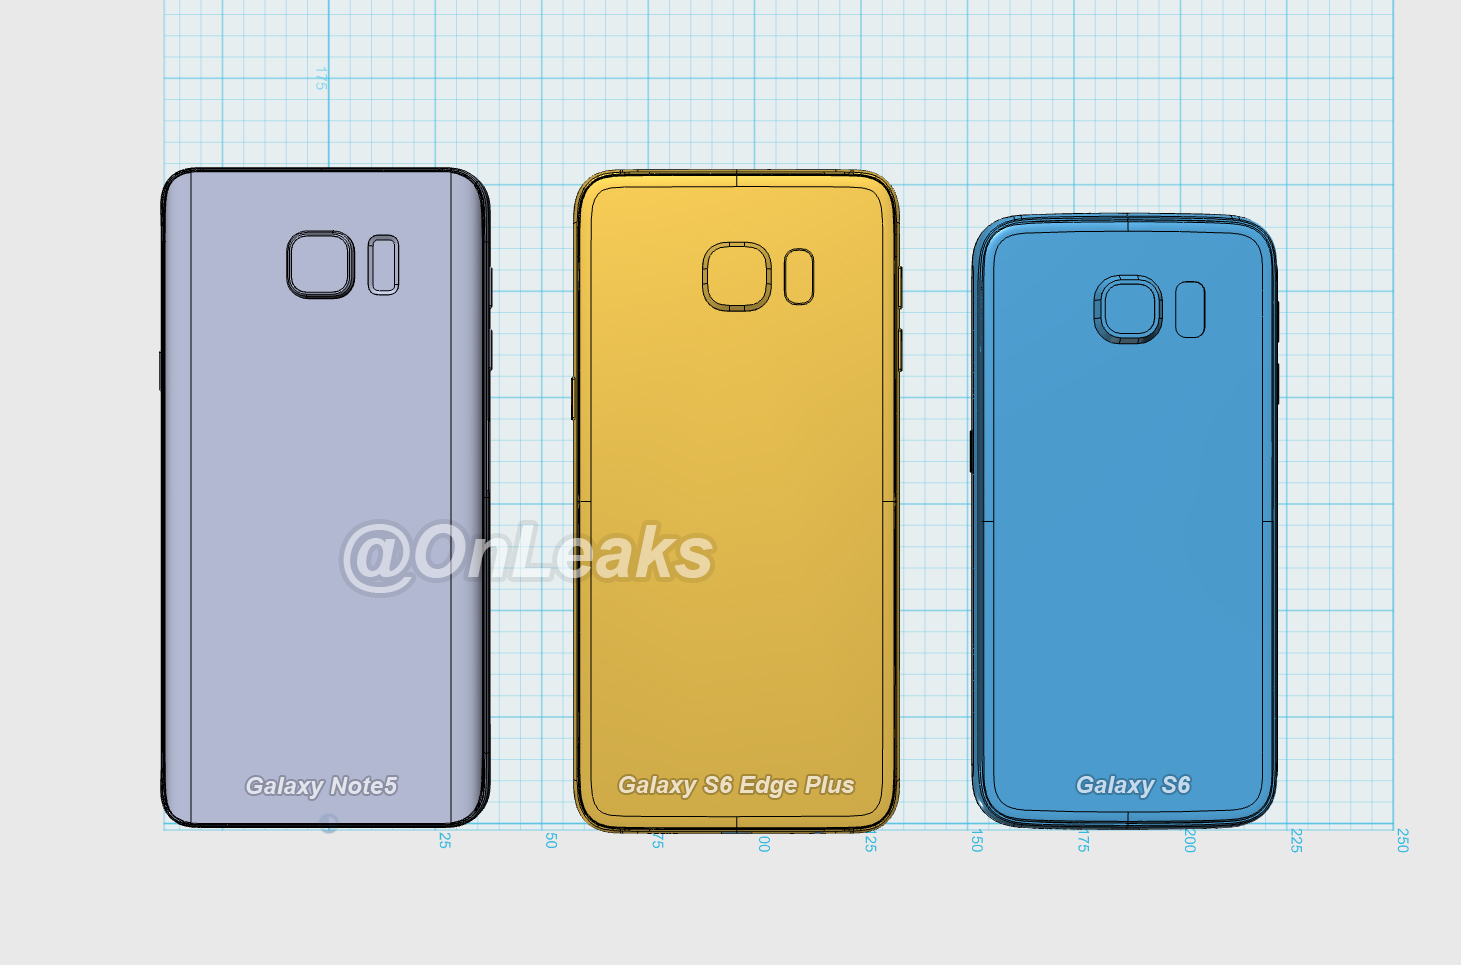 มาดูขนาดของ Samsung Galaxy Note 5 และ Galaxy S6 edge Plus เมื่อเอามาเทียบกับ Galaxy S6